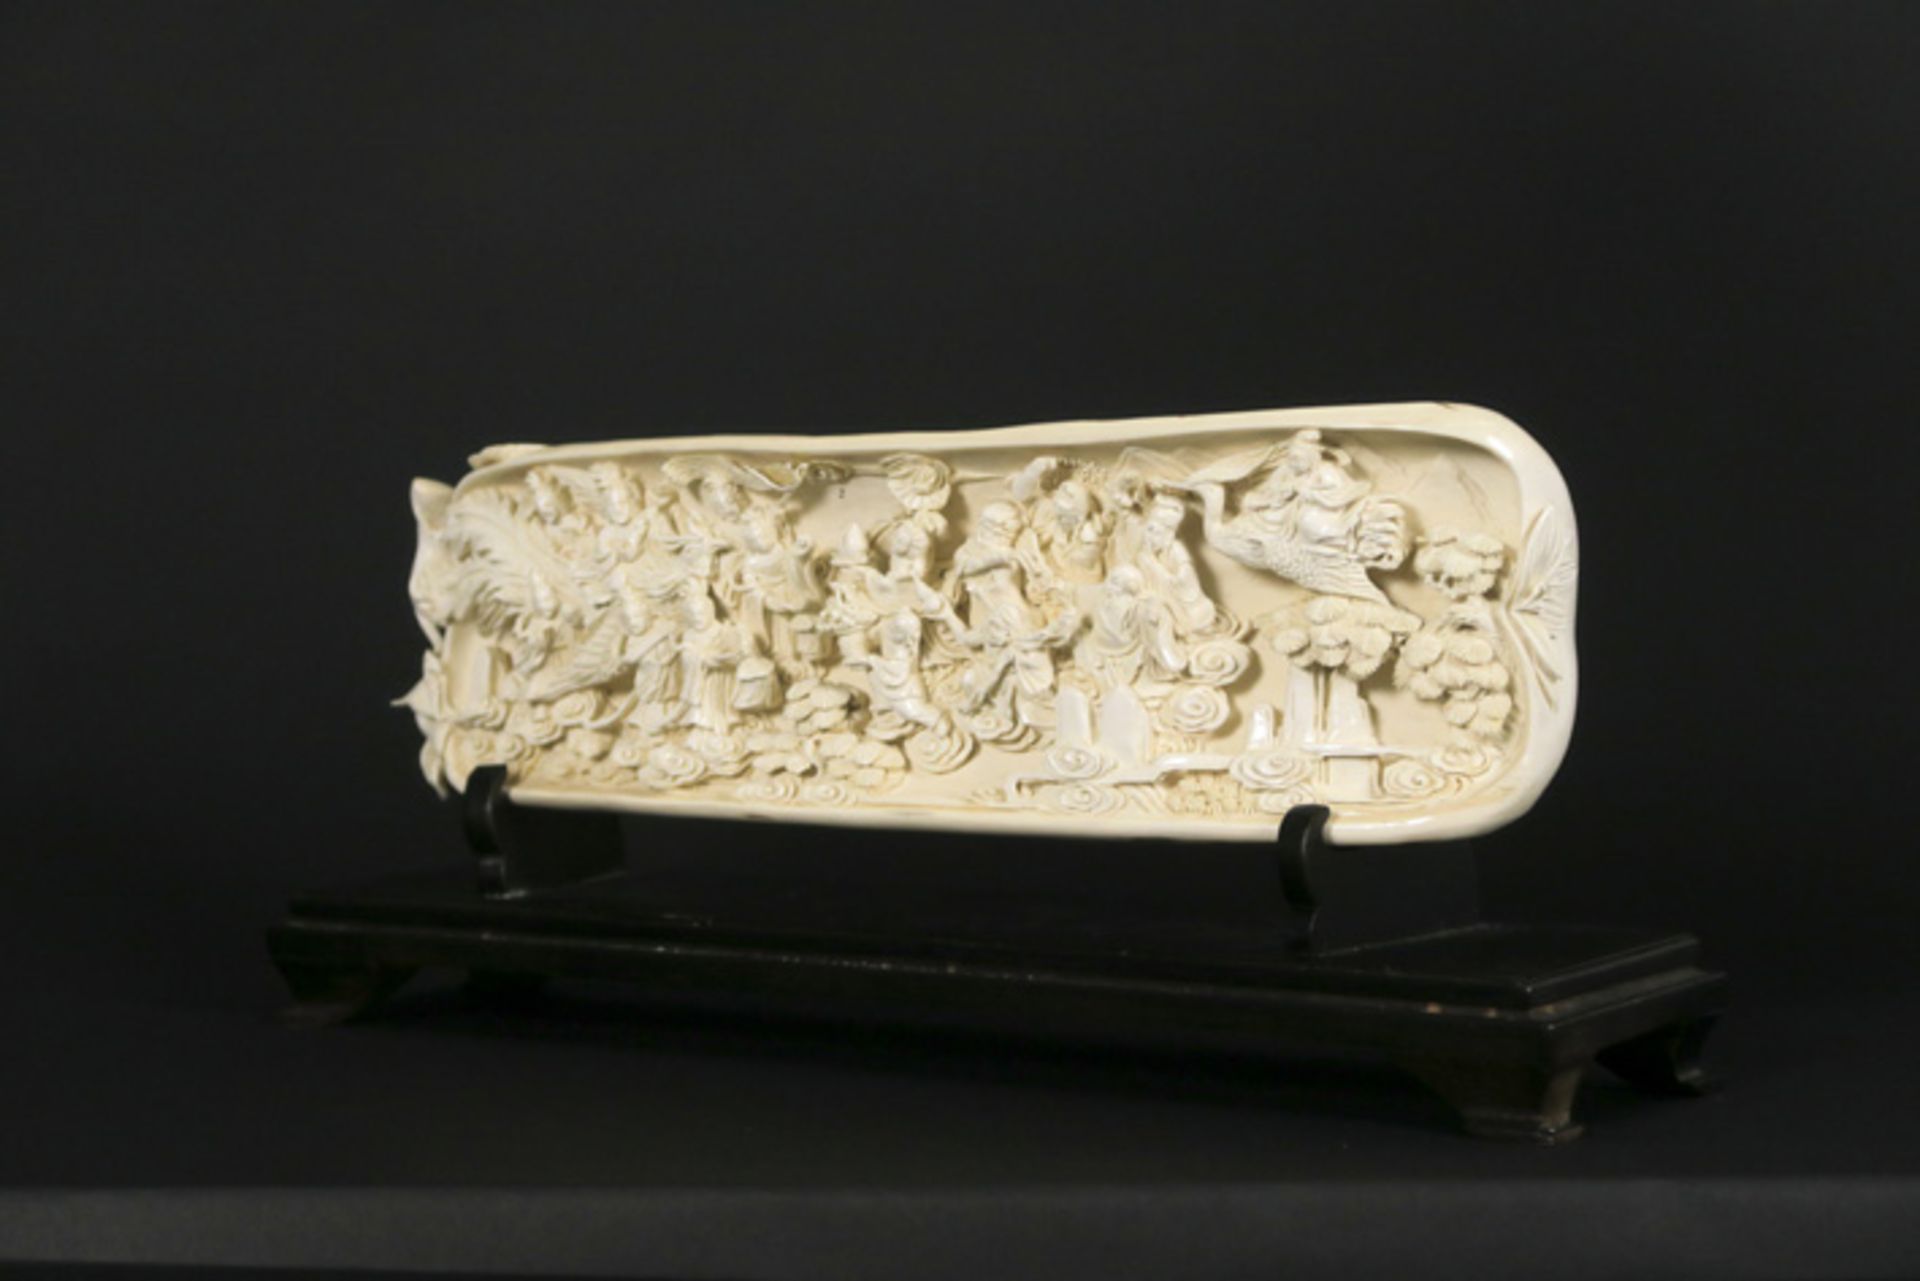 CHINA - QING-DYNASTIE (1644 - 1912) - ca 1900/10 prachtige sculptuur in ivoor met [...] - Bild 4 aus 4